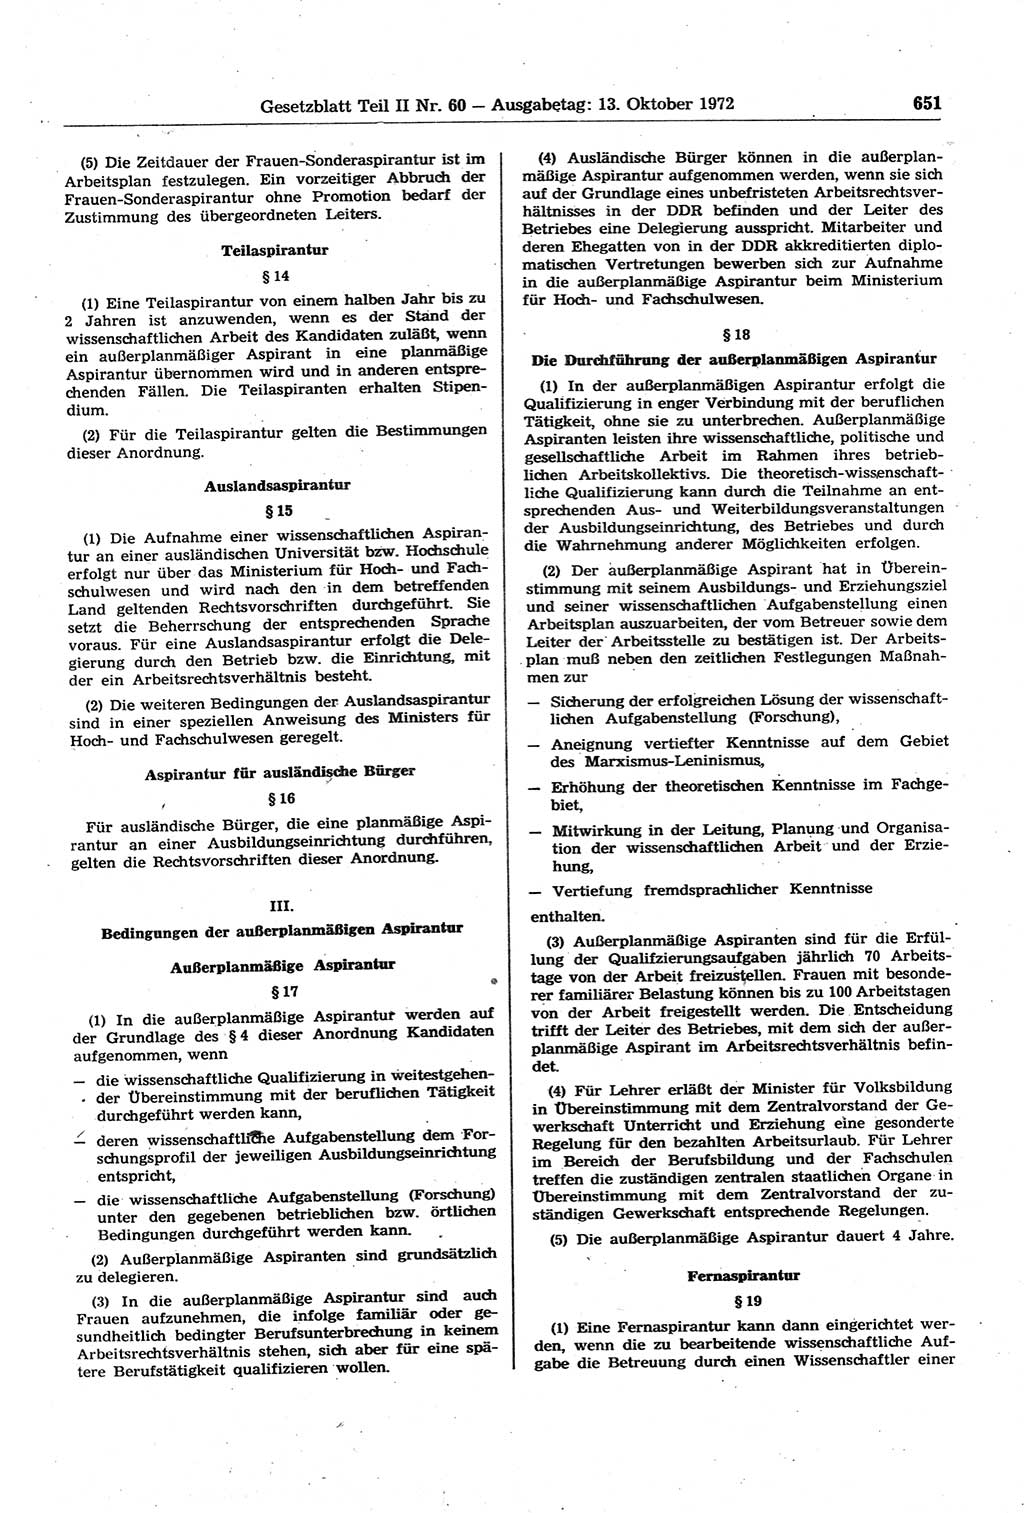 Gesetzblatt (GBl.) der Deutschen Demokratischen Republik (DDR) Teil ⅠⅠ 1972, Seite 651 (GBl. DDR ⅠⅠ 1972, S. 651)